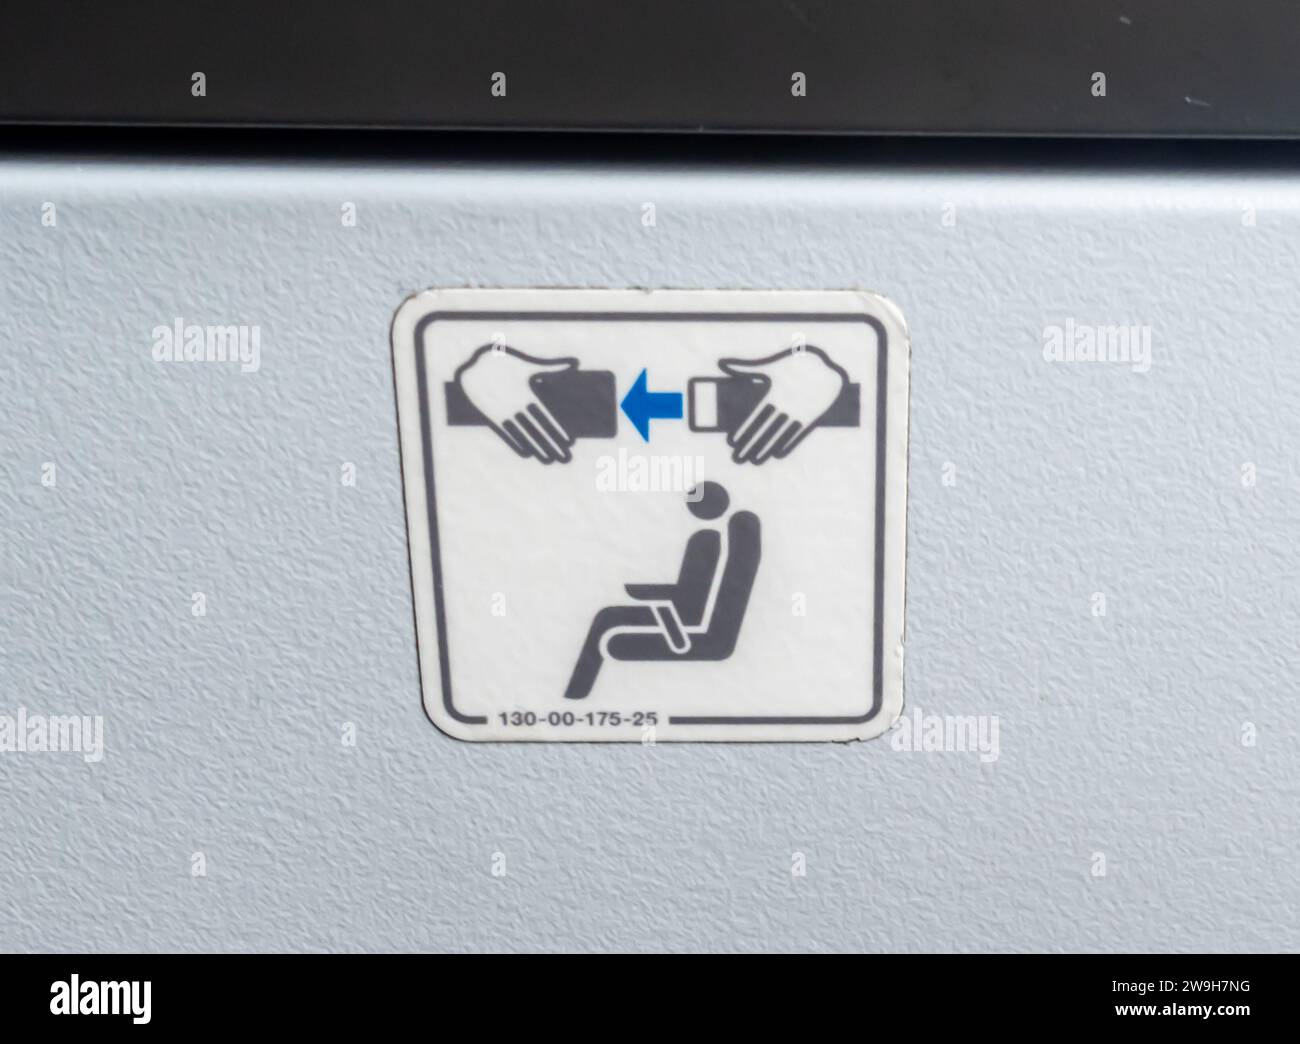 Graphiques de siège d'avion avertissant de boucler une ceinture de sécurité dans un avion Banque D'Images